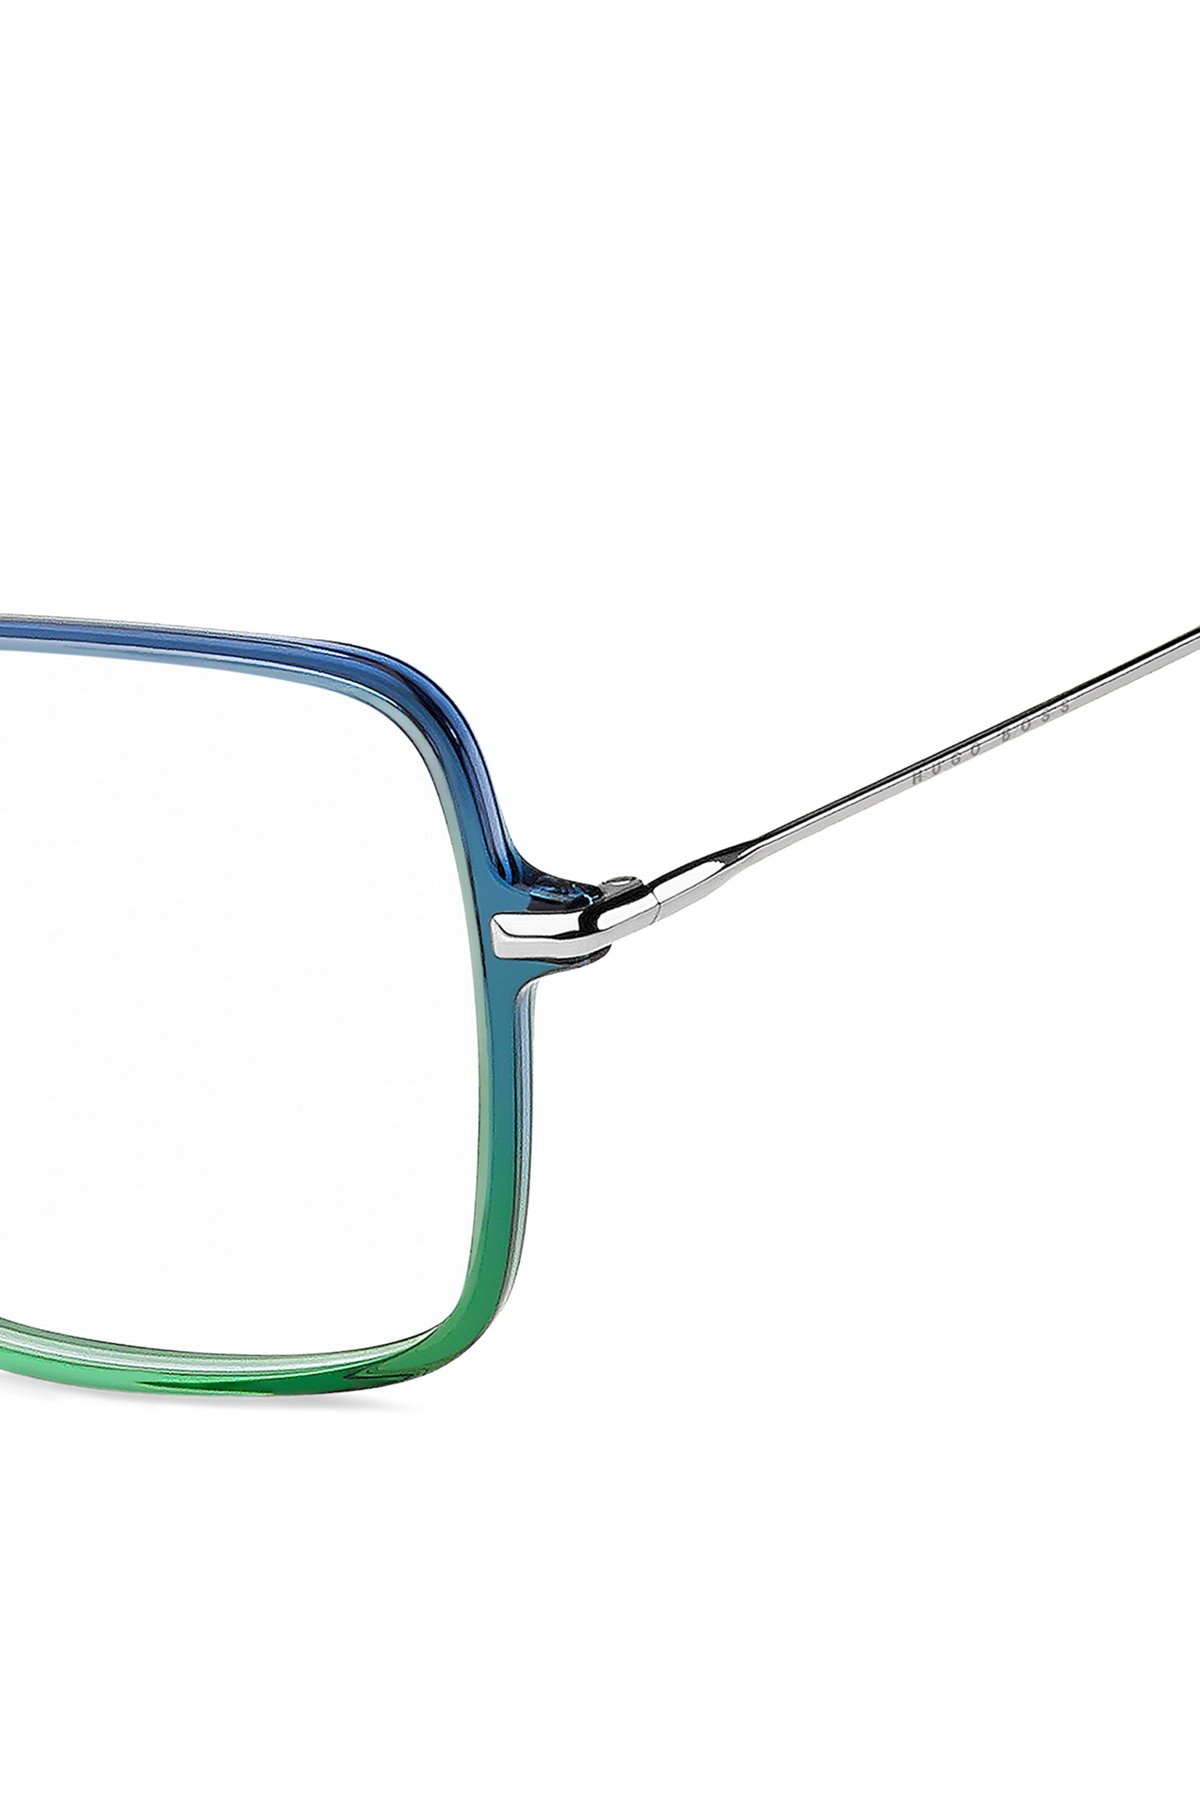 Montuur voor optische bril met groen-blauwe voorkant en ronde pootjes, Blauw met dessin